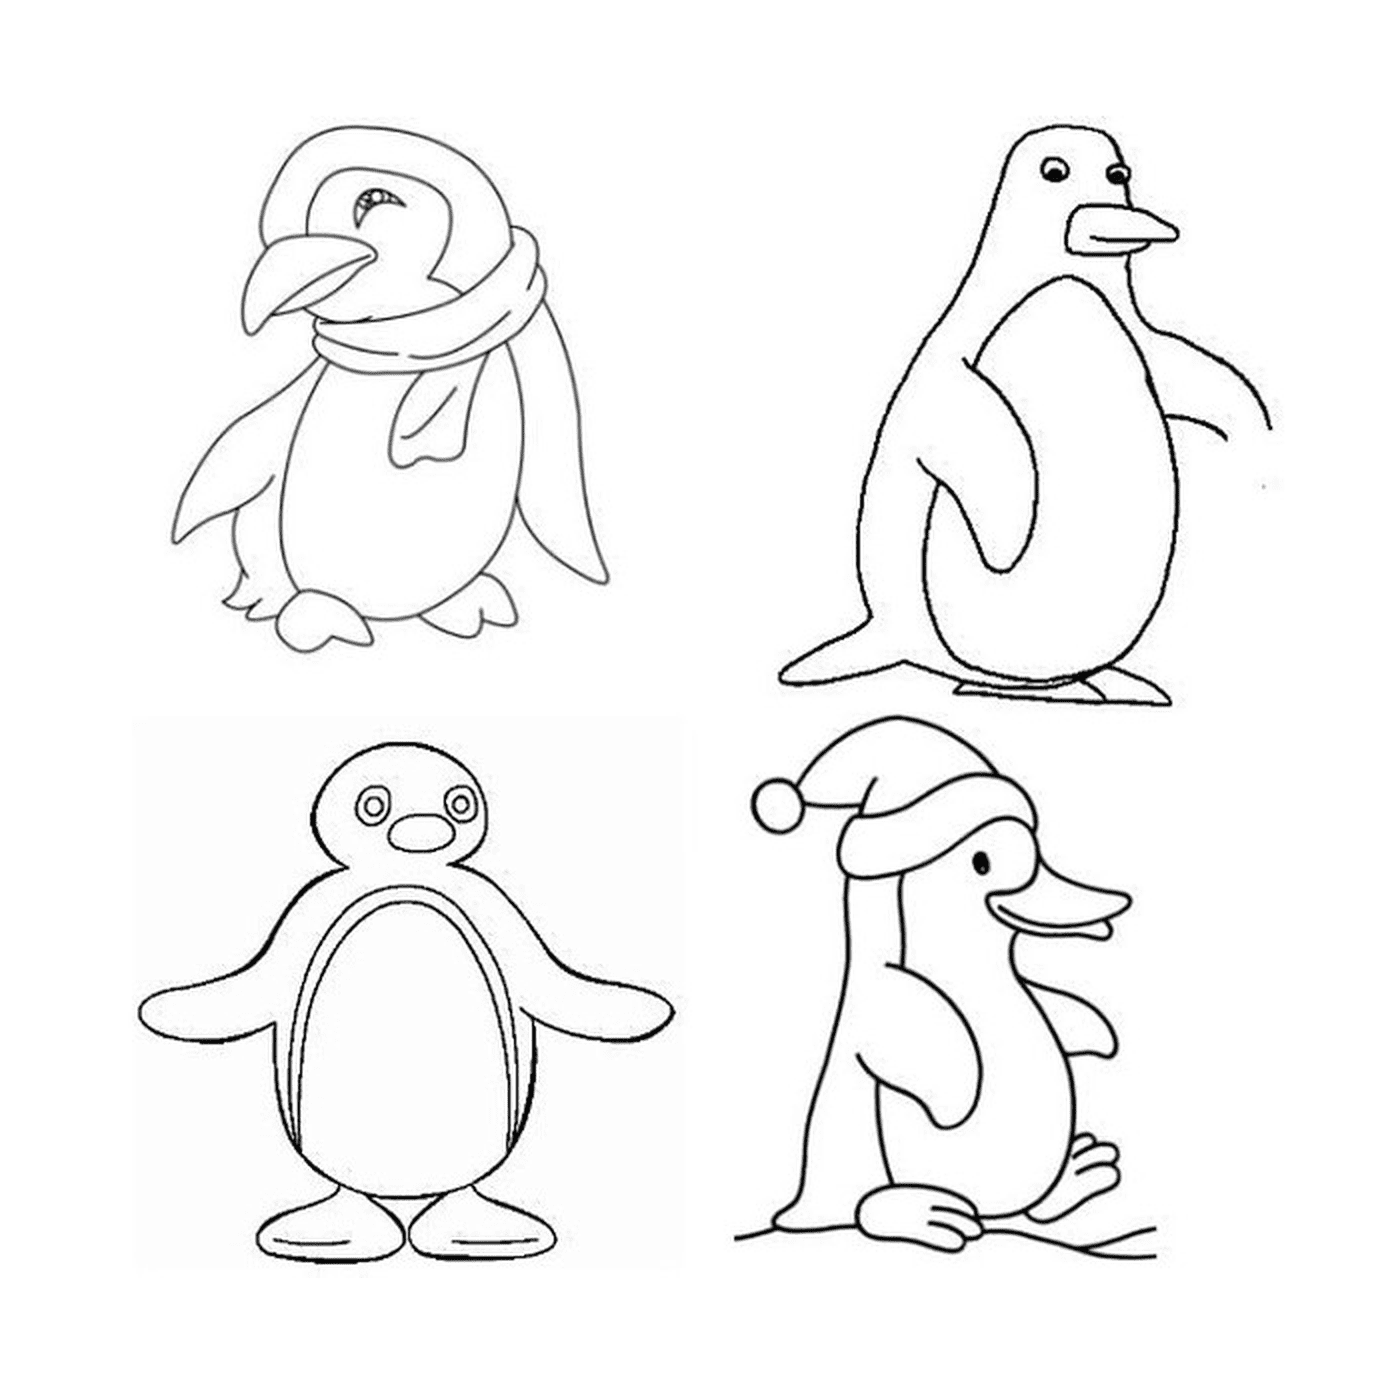  Cuatro pingüinos diferentes en el dibujo 